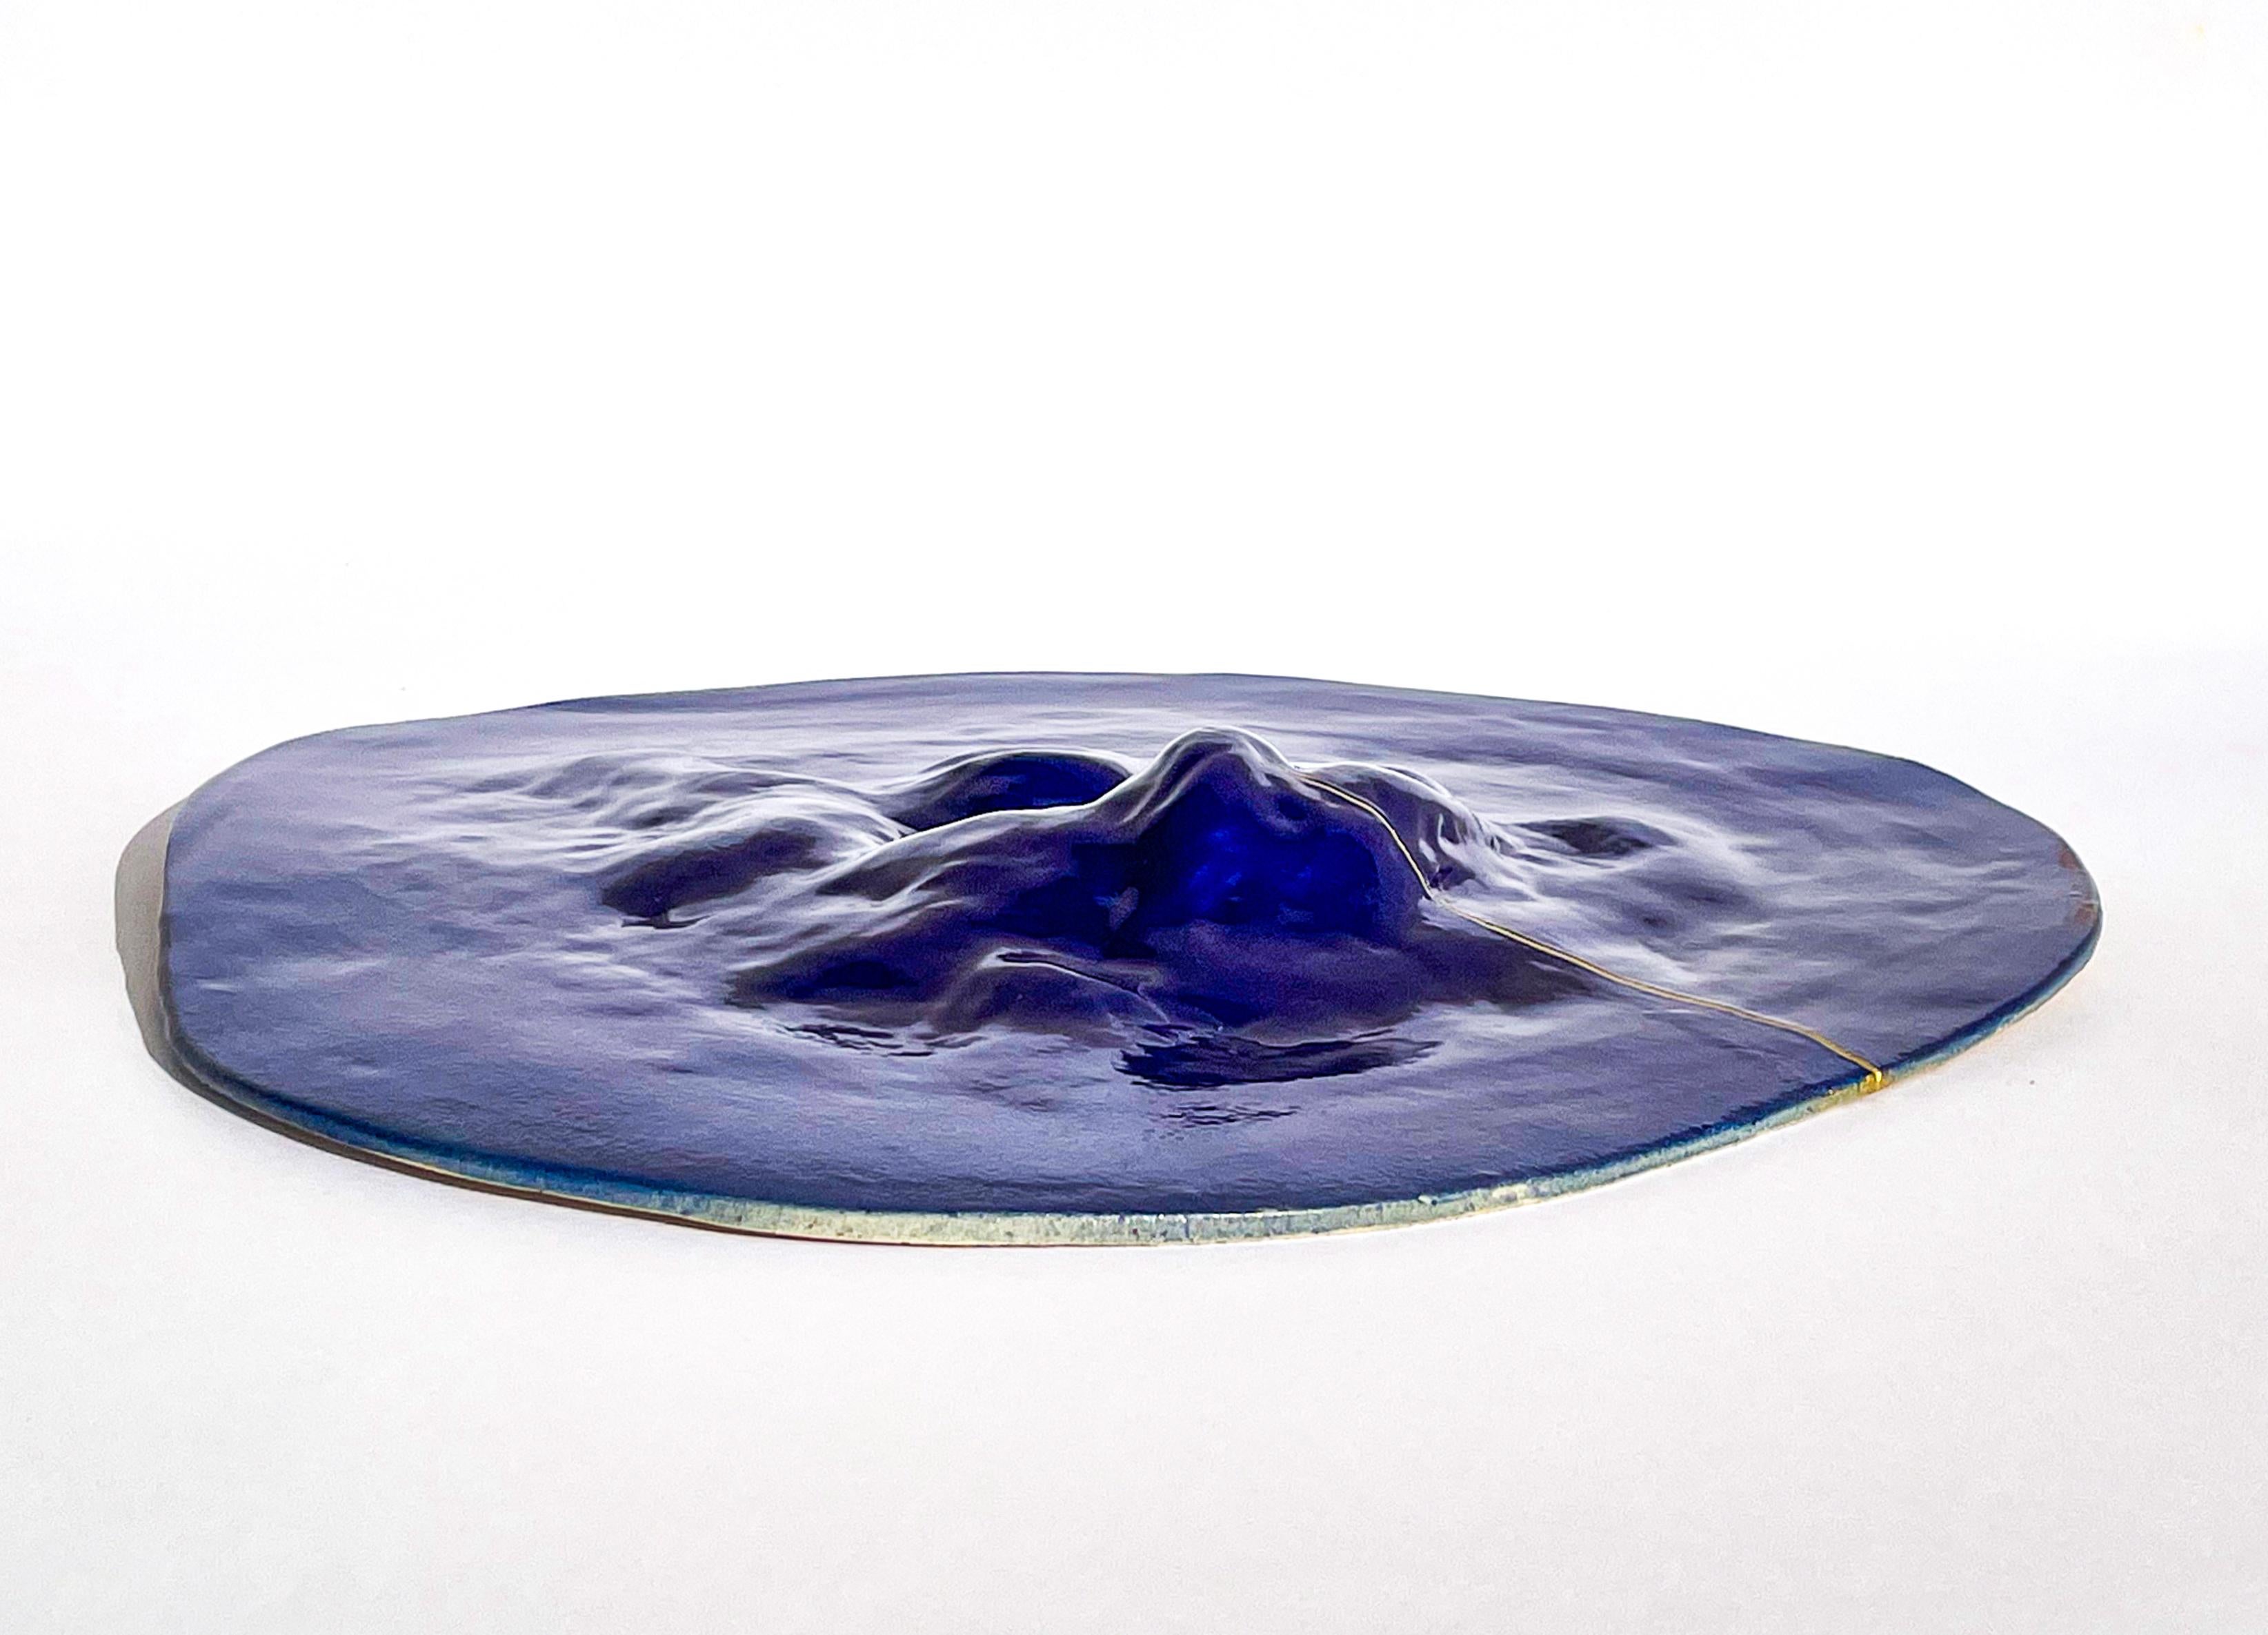 Glazed Unique Sculptural 'Gongshi' Plates N0.22 Objet d'Art Cobalt Blue For Sale